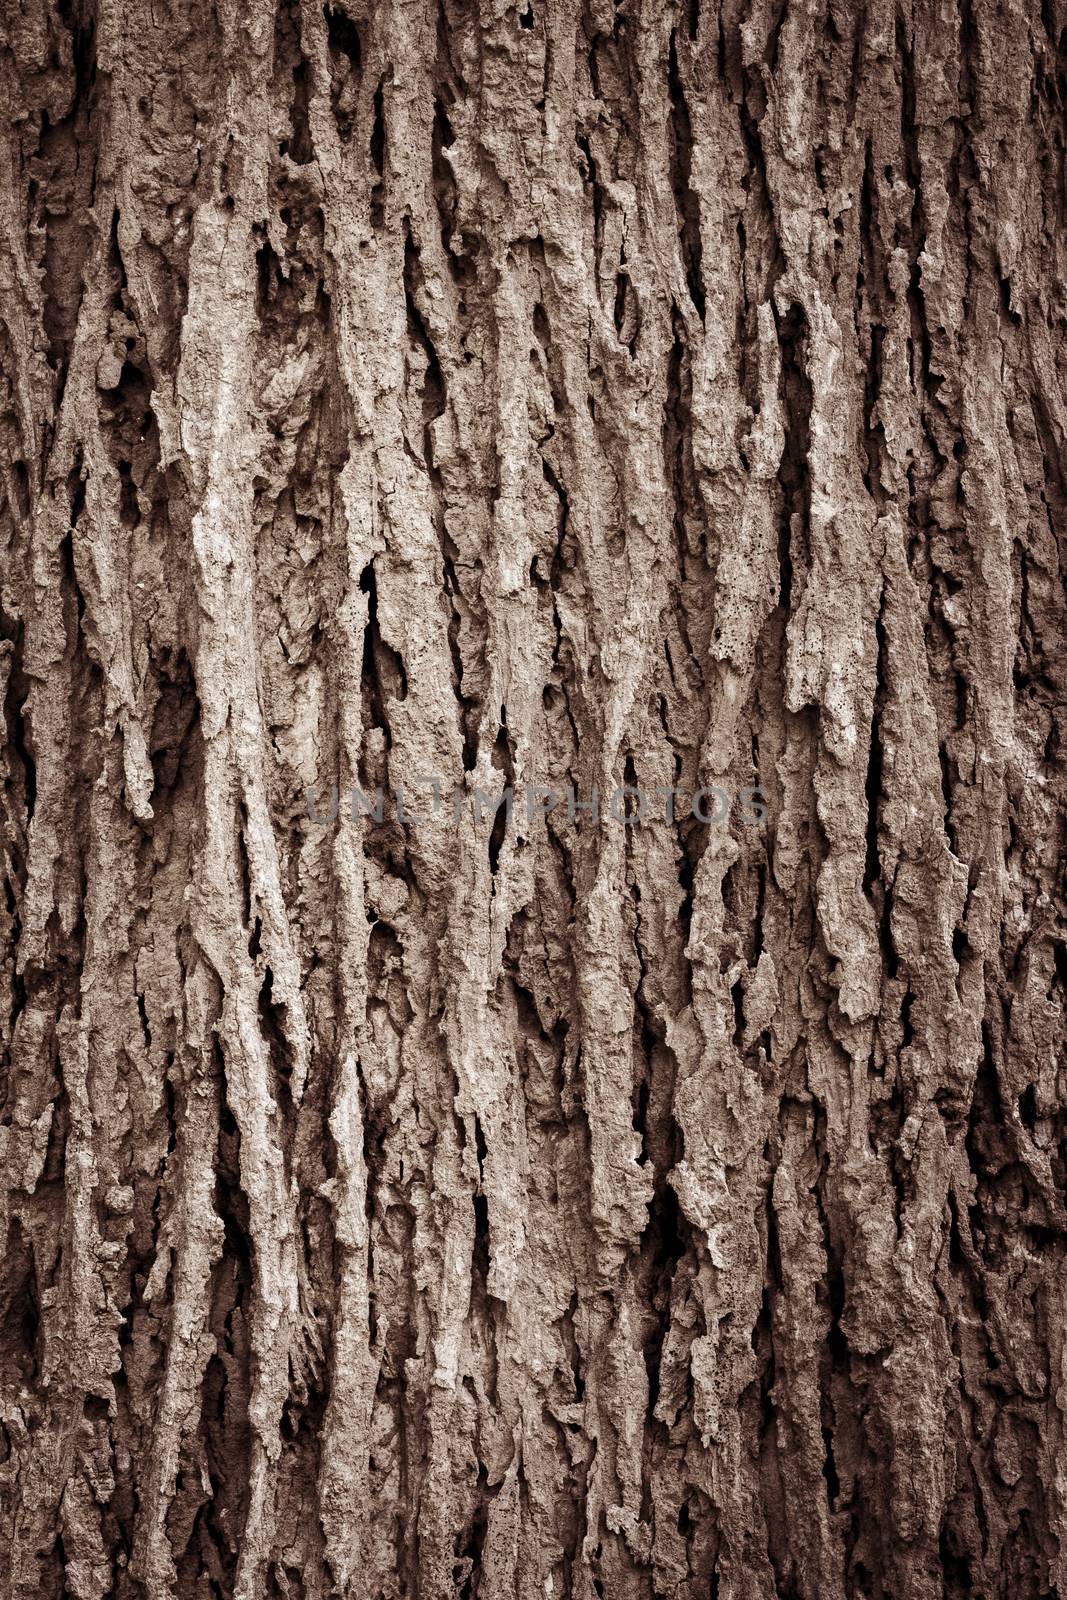 Tree bark texture full frame in nature